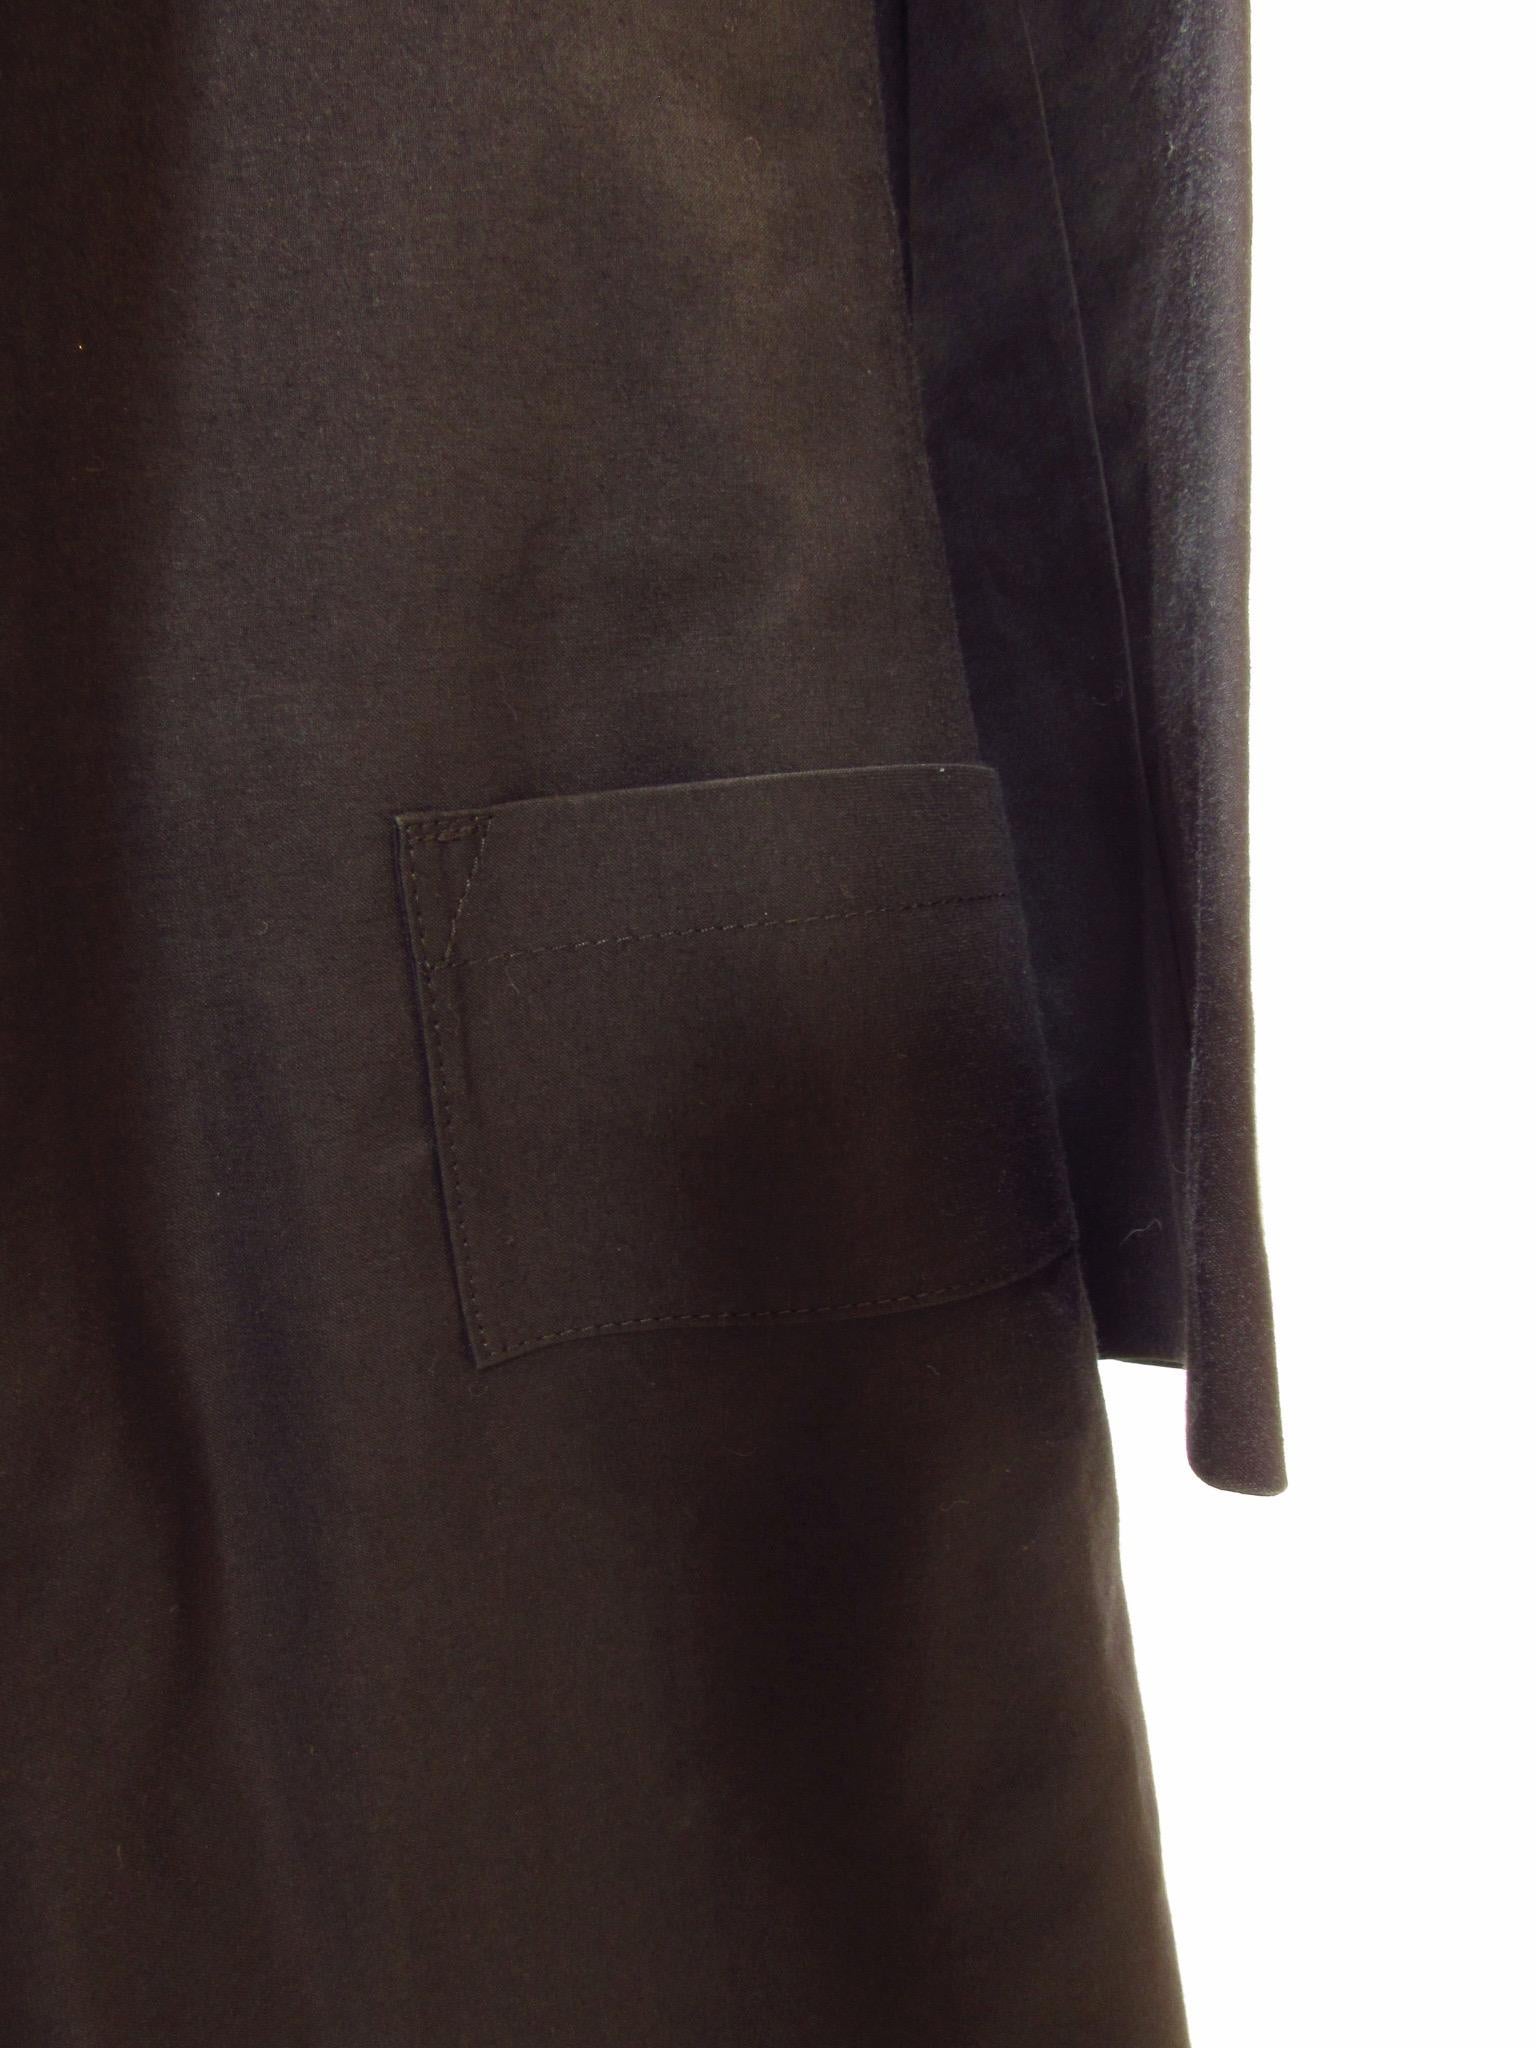 Yohji Yamamoto Y's Black Belted Raincoat For Sale 5